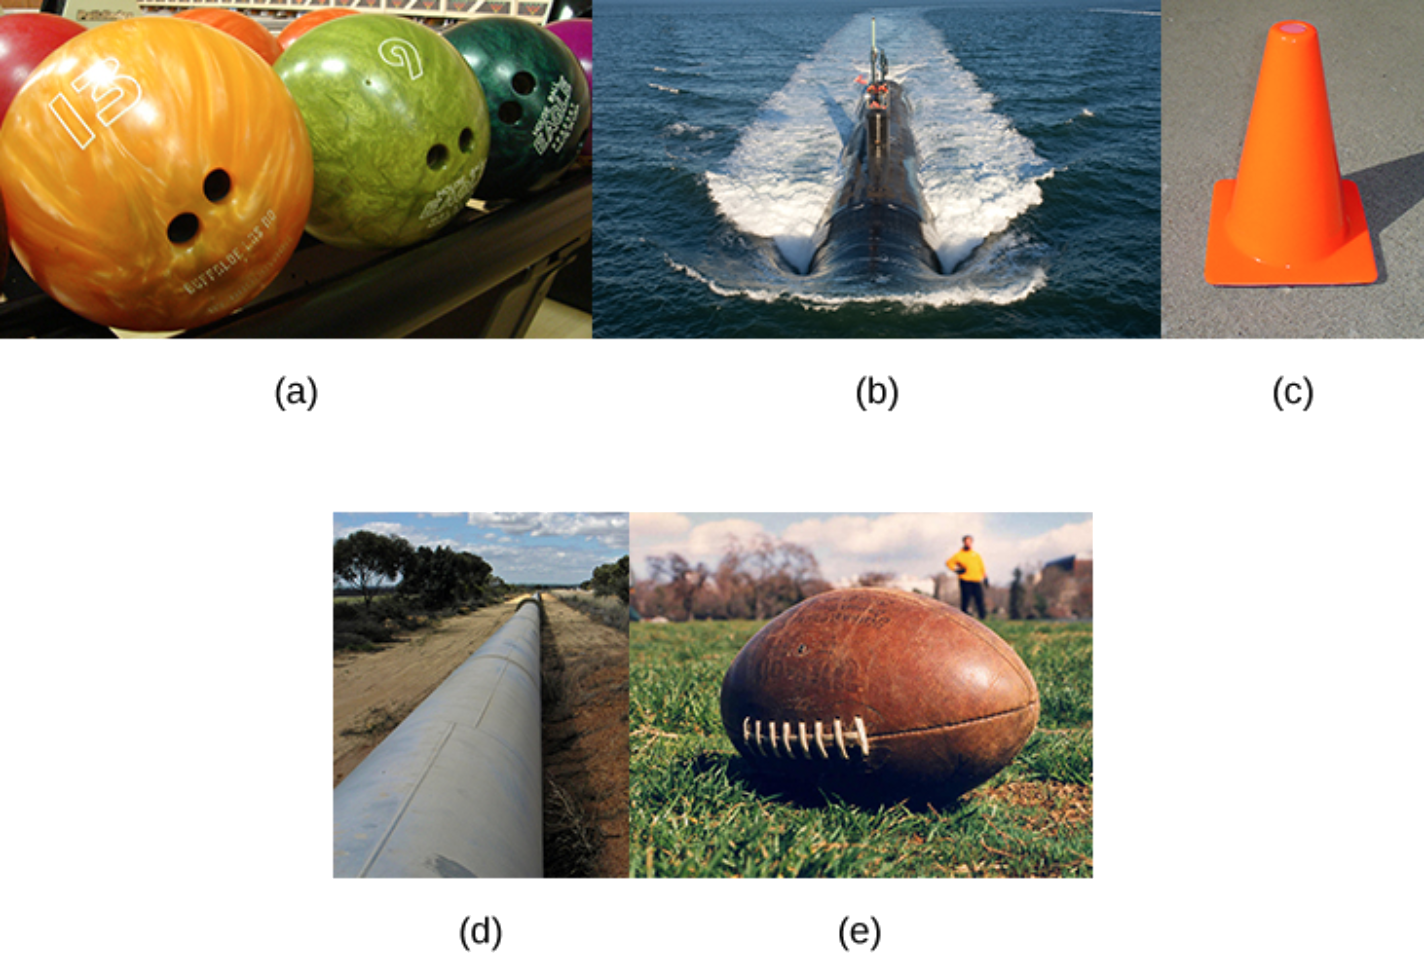 Esta cifra tiene 5 imágenes. En la primera imagen se muestran bolas de boliche. La segunda imagen es un submarino que viaja sobre una superficie oceánica. La tercera imagen es un cono de tráfico. La cuarta imagen es una pipline a través de algunas tierras áridas. La quinta imagen es un balón de fútbol.